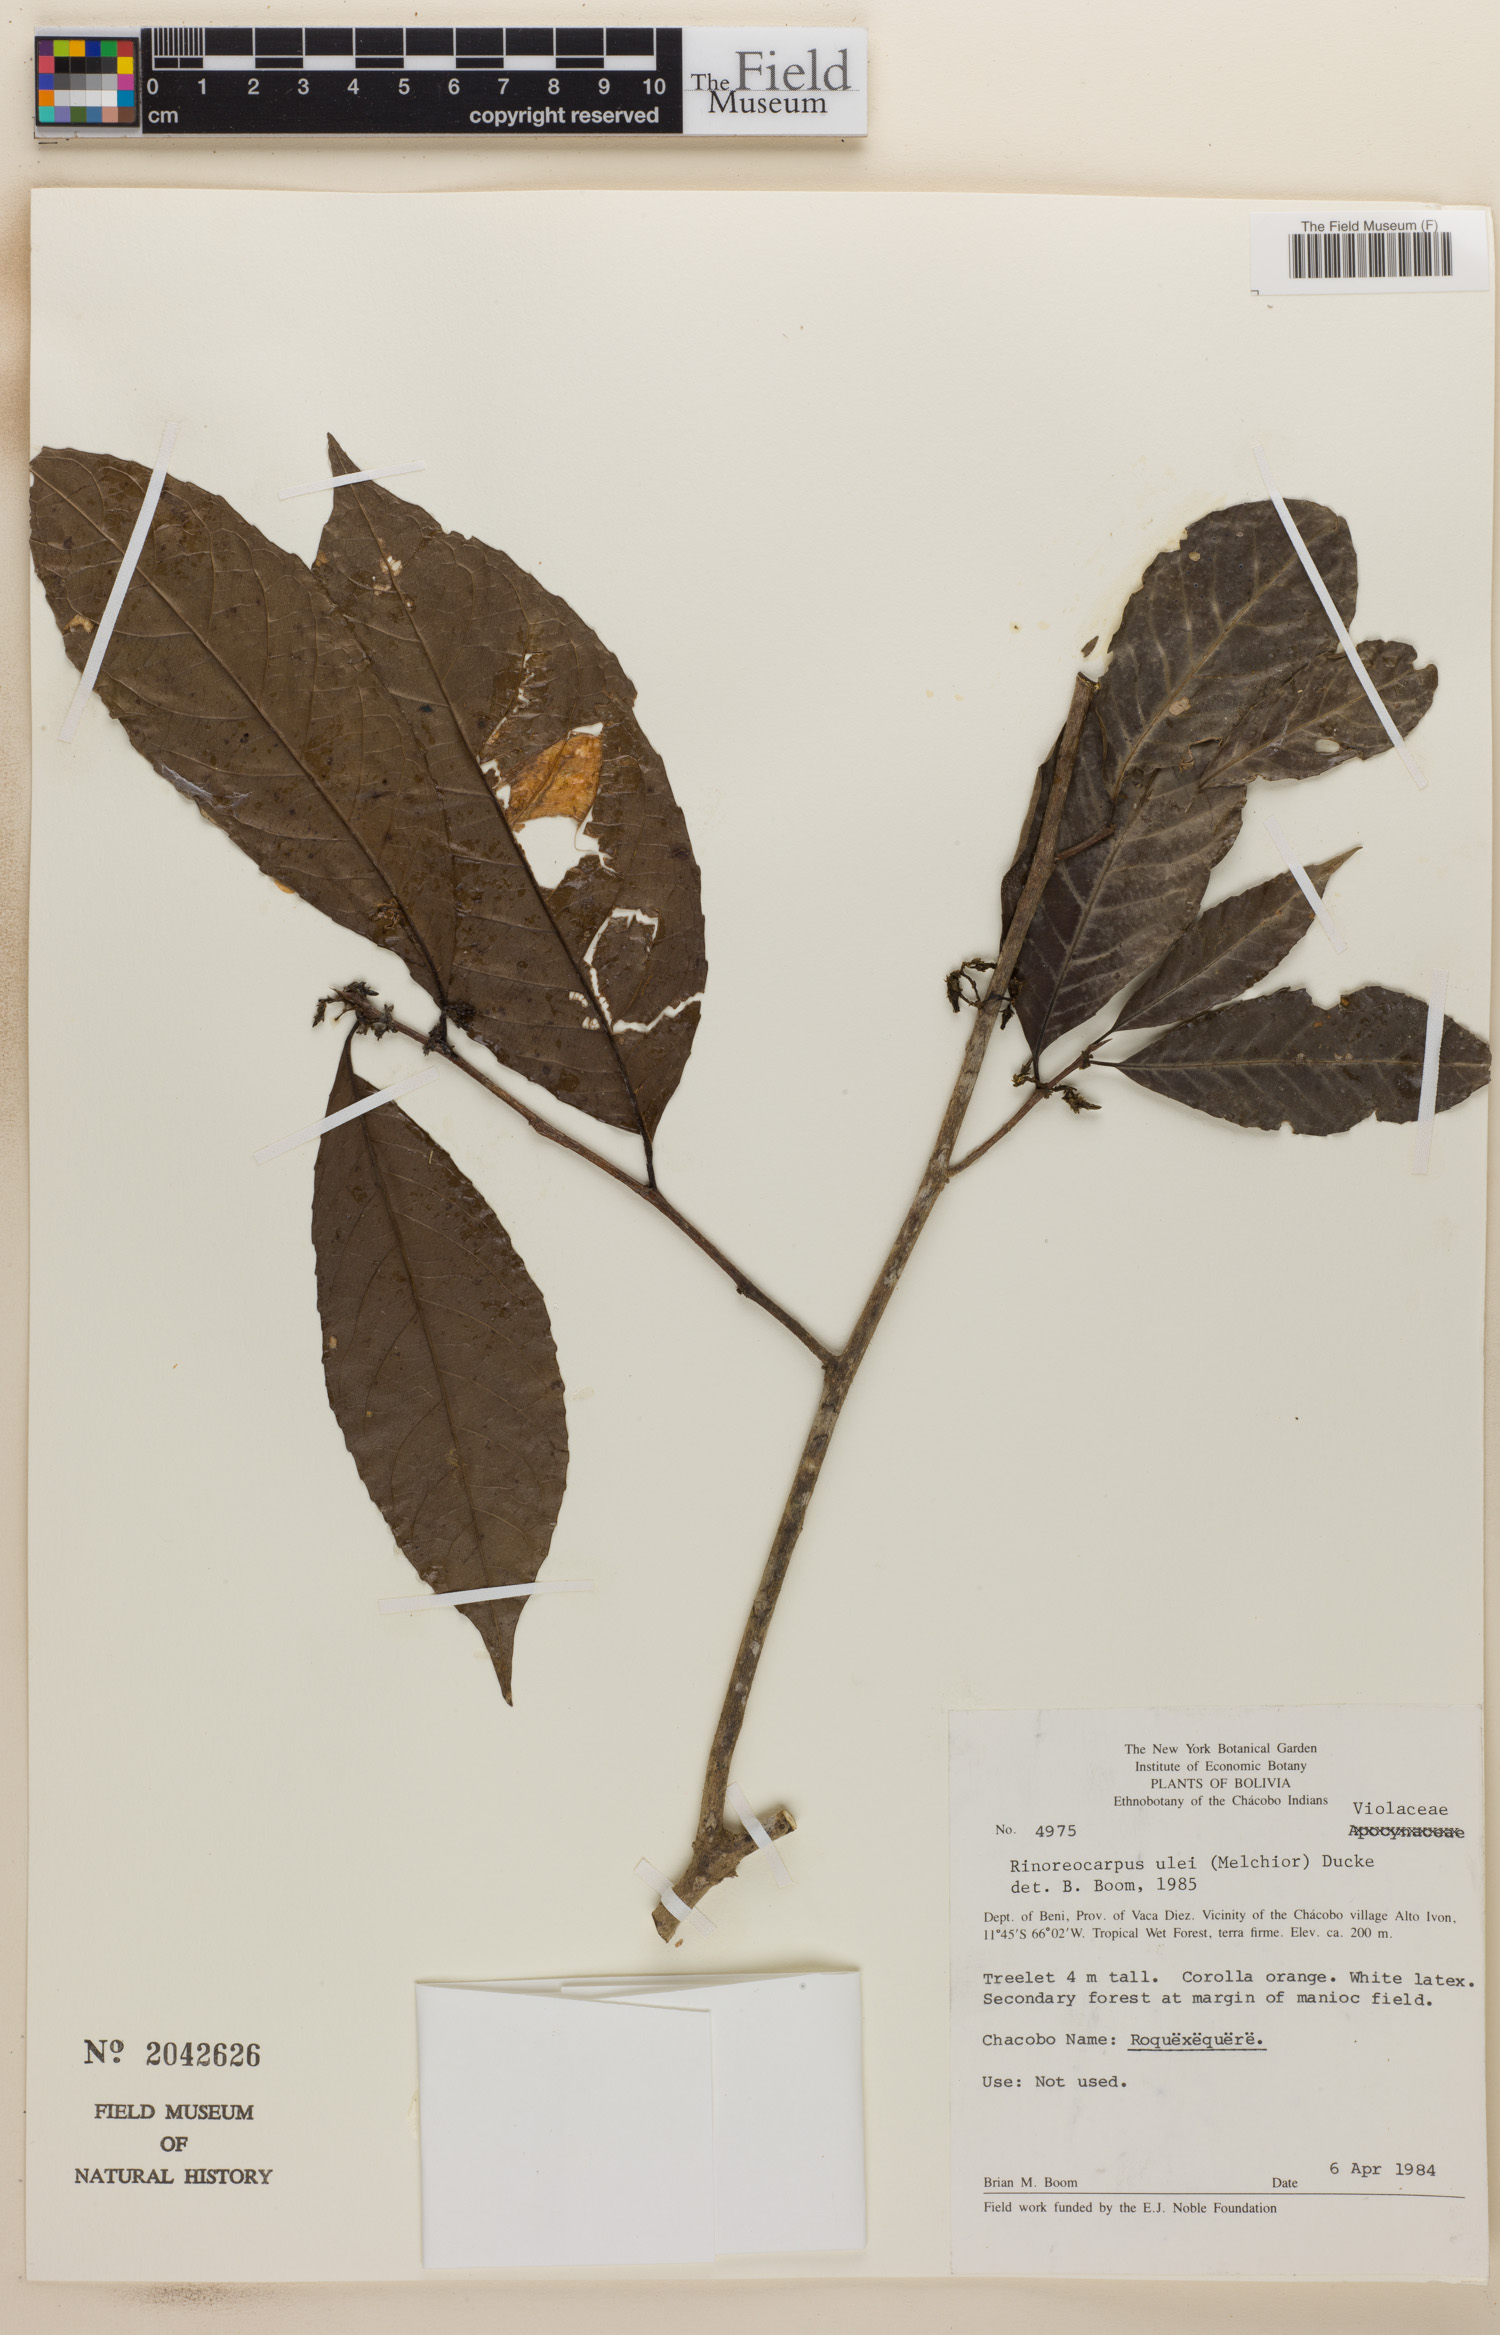 Rinoreocarpus image